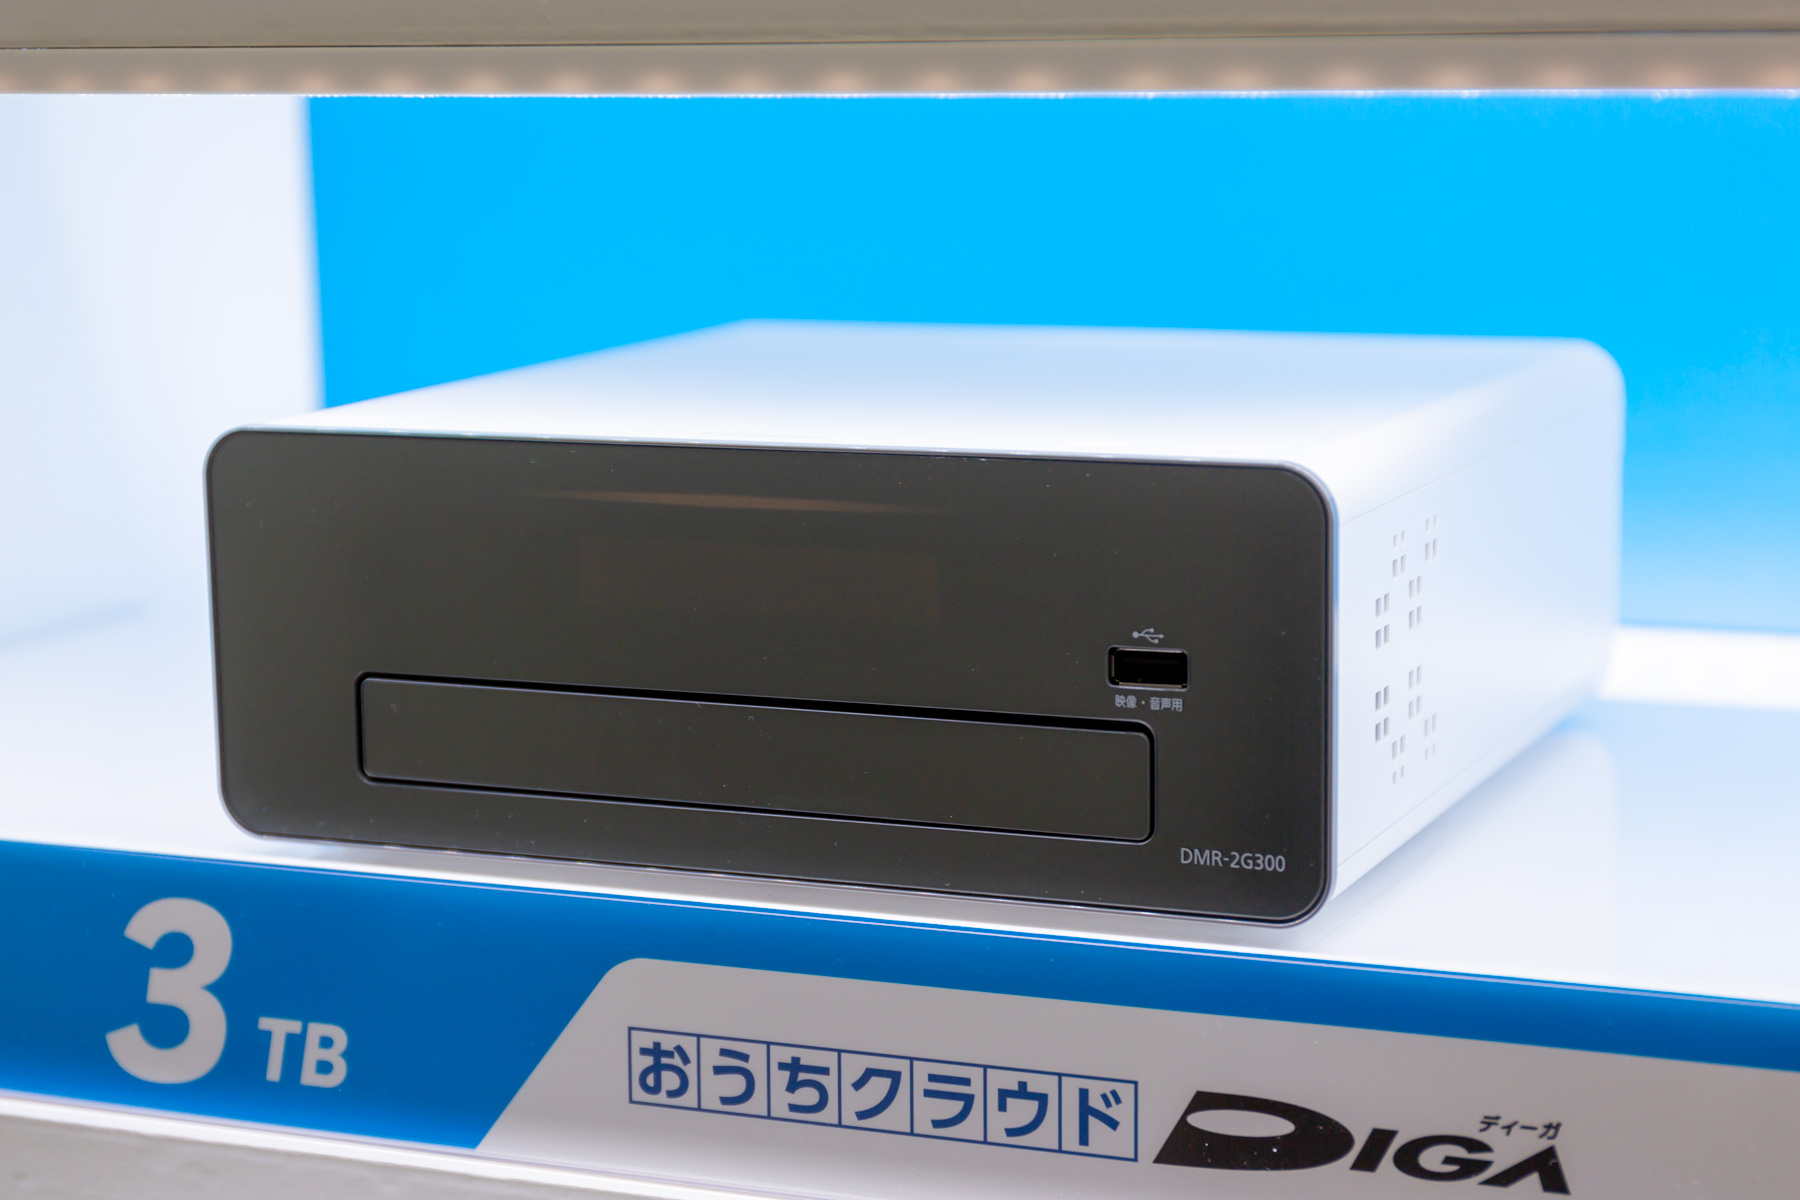 【新品未使用】Panasonic DIGA(ディーガ) DMR-2G300